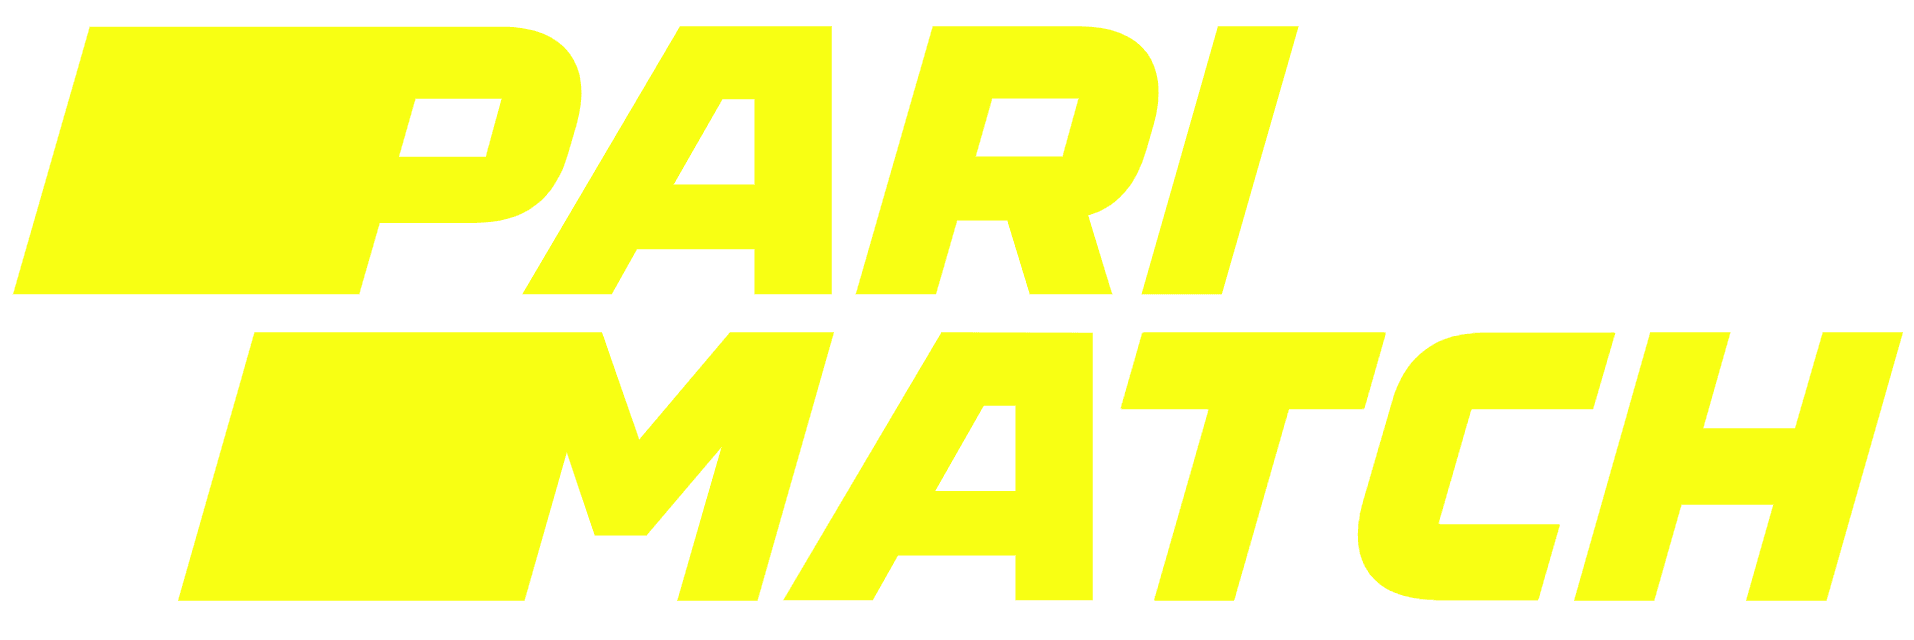 parimatch-logo.png